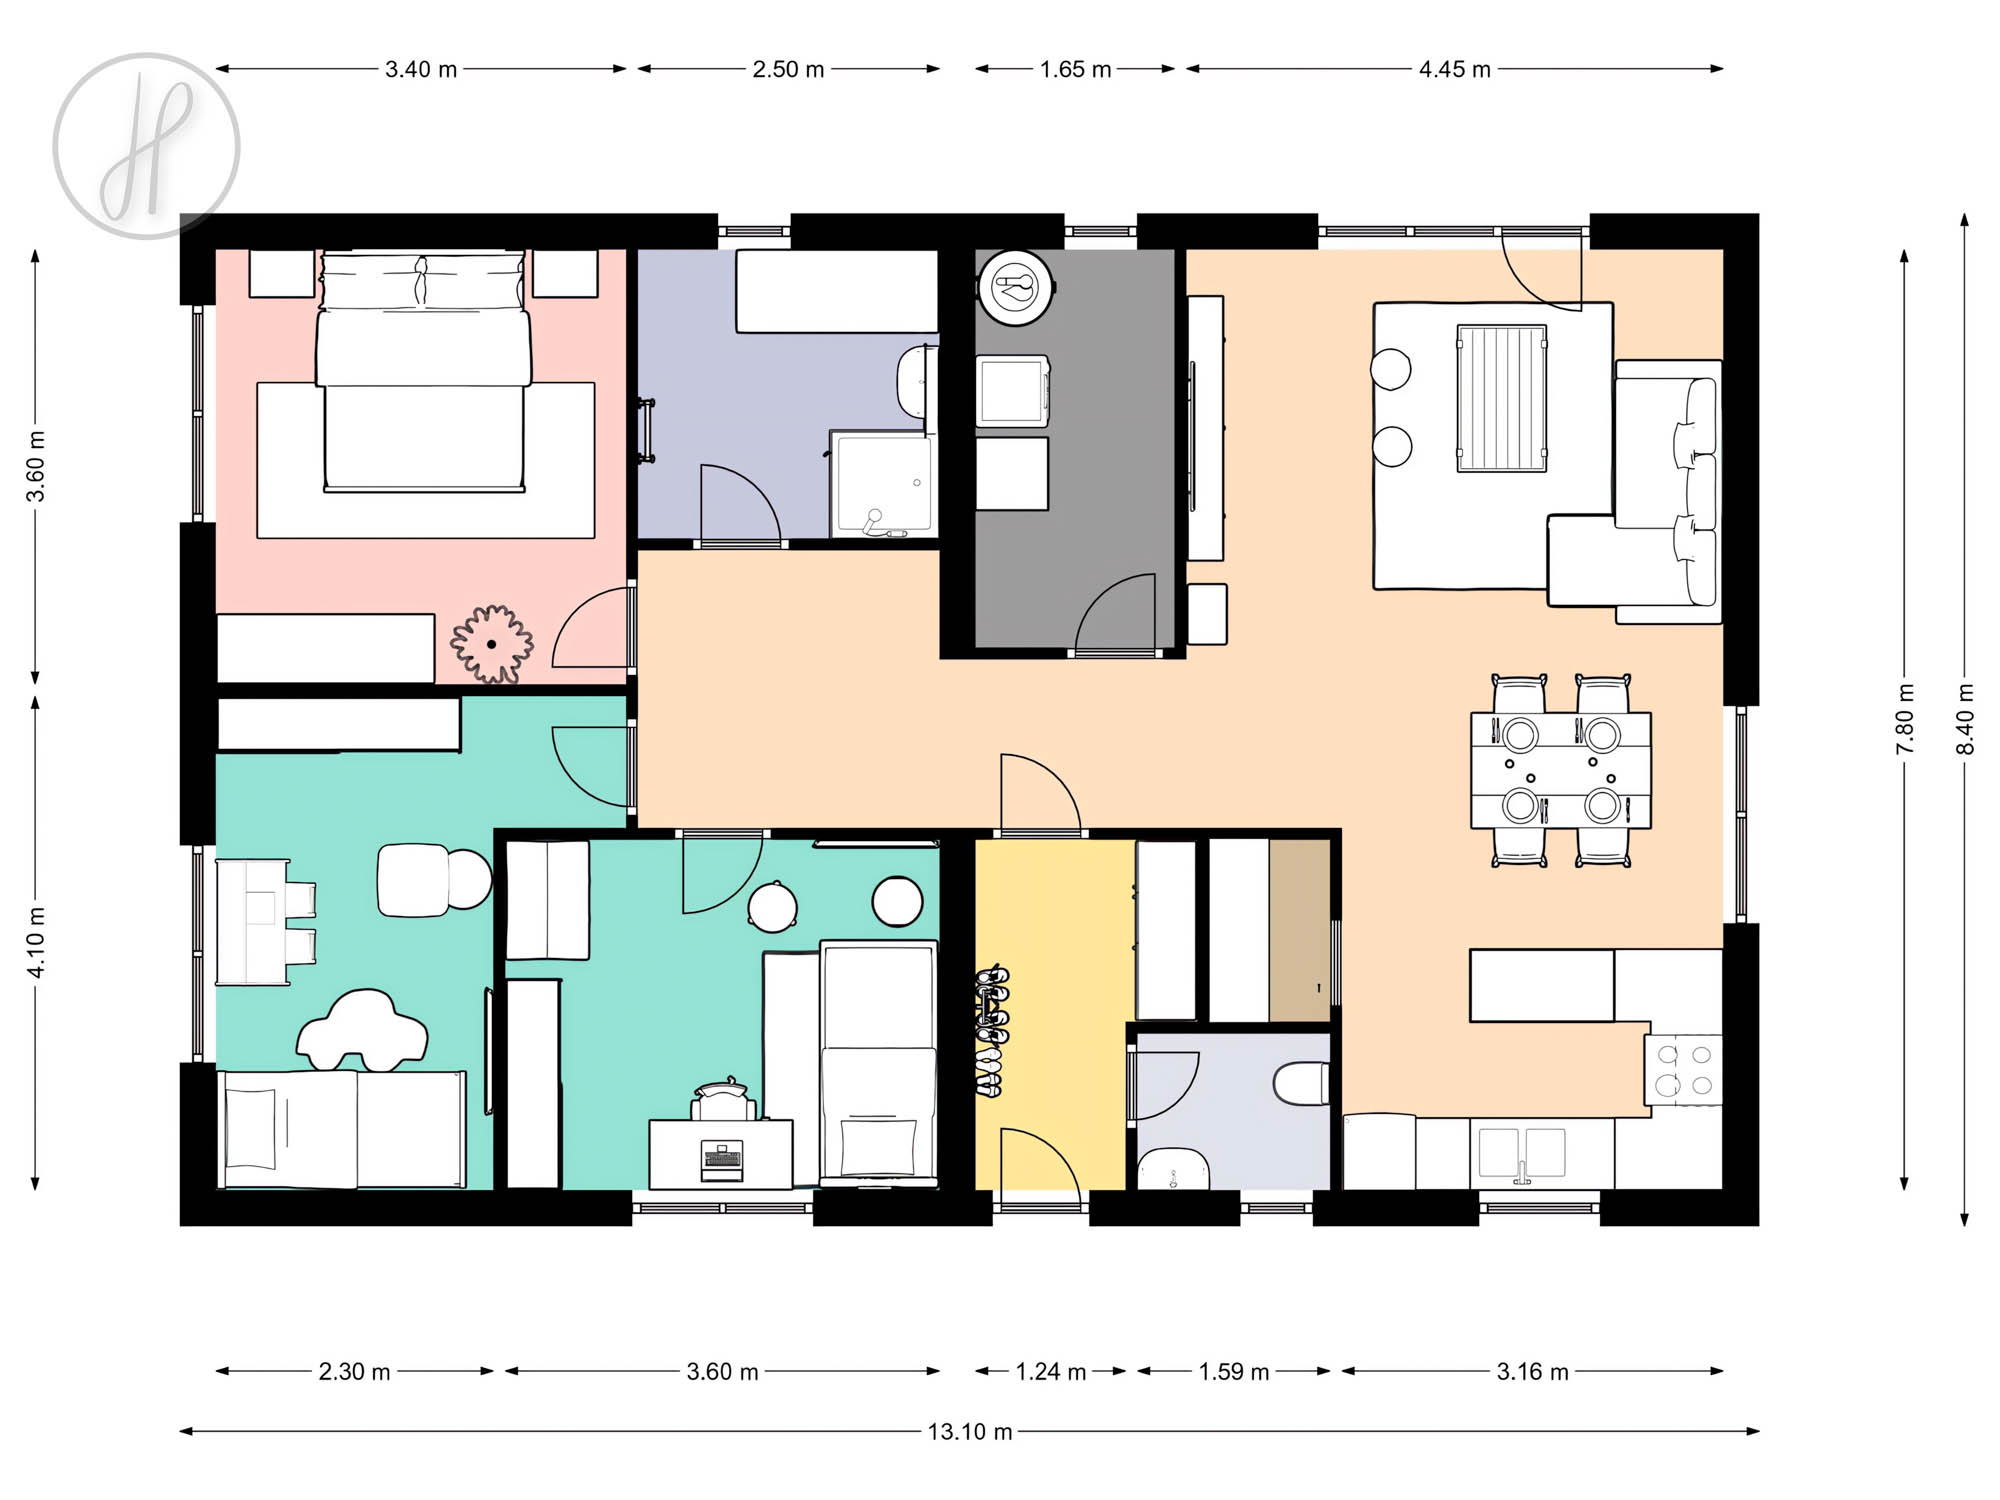 Prodej rodinného domu 4+kk, 92,3 m², Křížany - Žibřidice, Žibřidice 292 ...